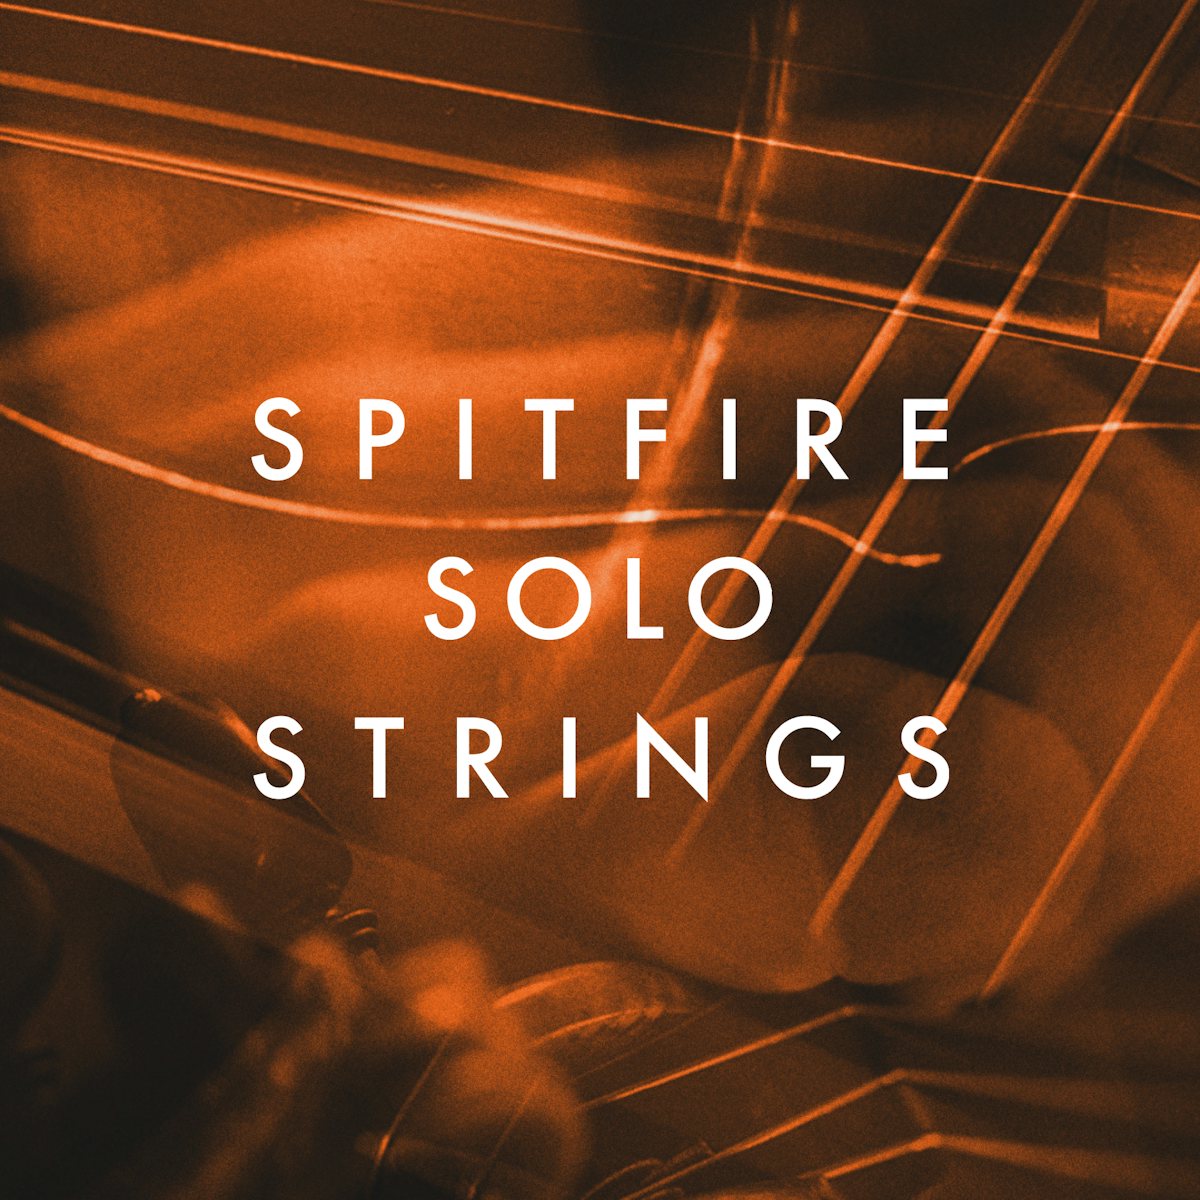 Spitfire Solo String artwork